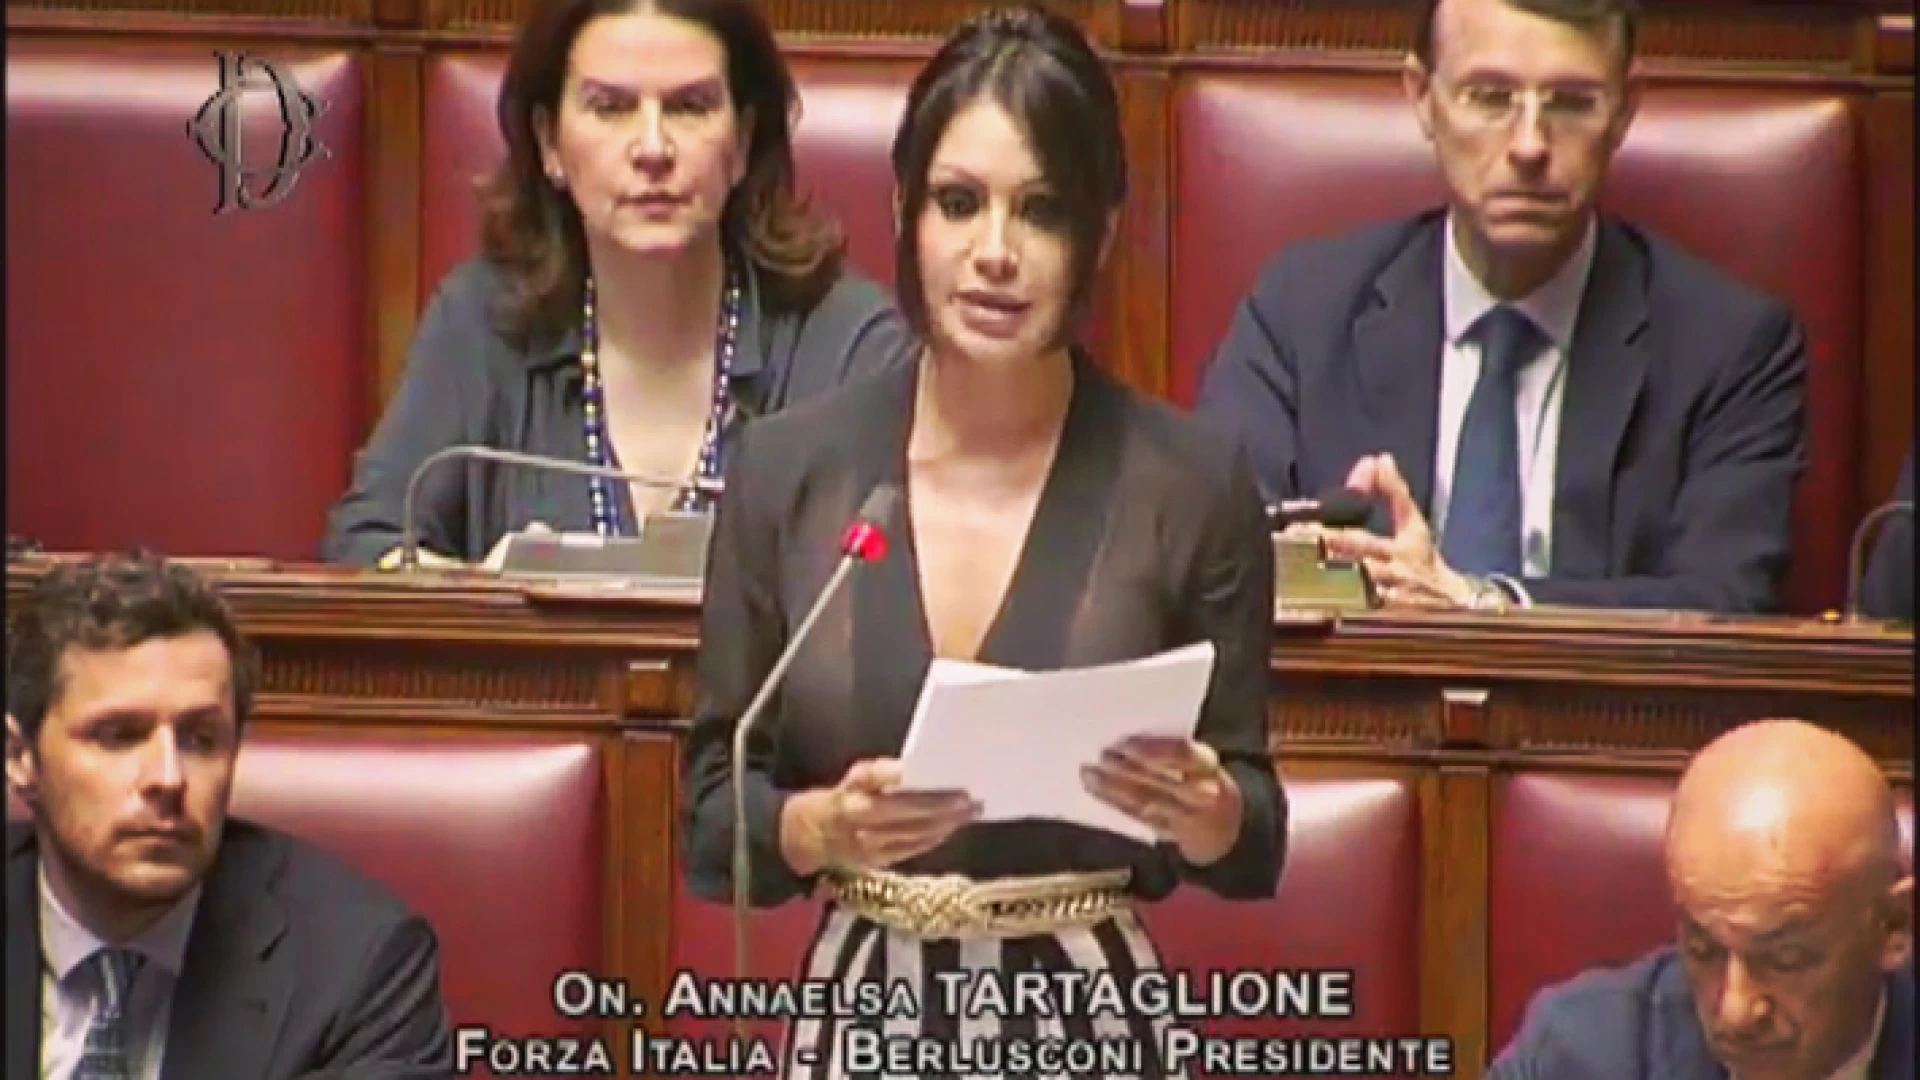 Onorevole Tartaglione: "Sconcerto e rabbia per quello che è accaduto ai bambini nell'asilo di Venafro". Forza Italia ha presentato un disegno di legge per le telecamere obbligatorie